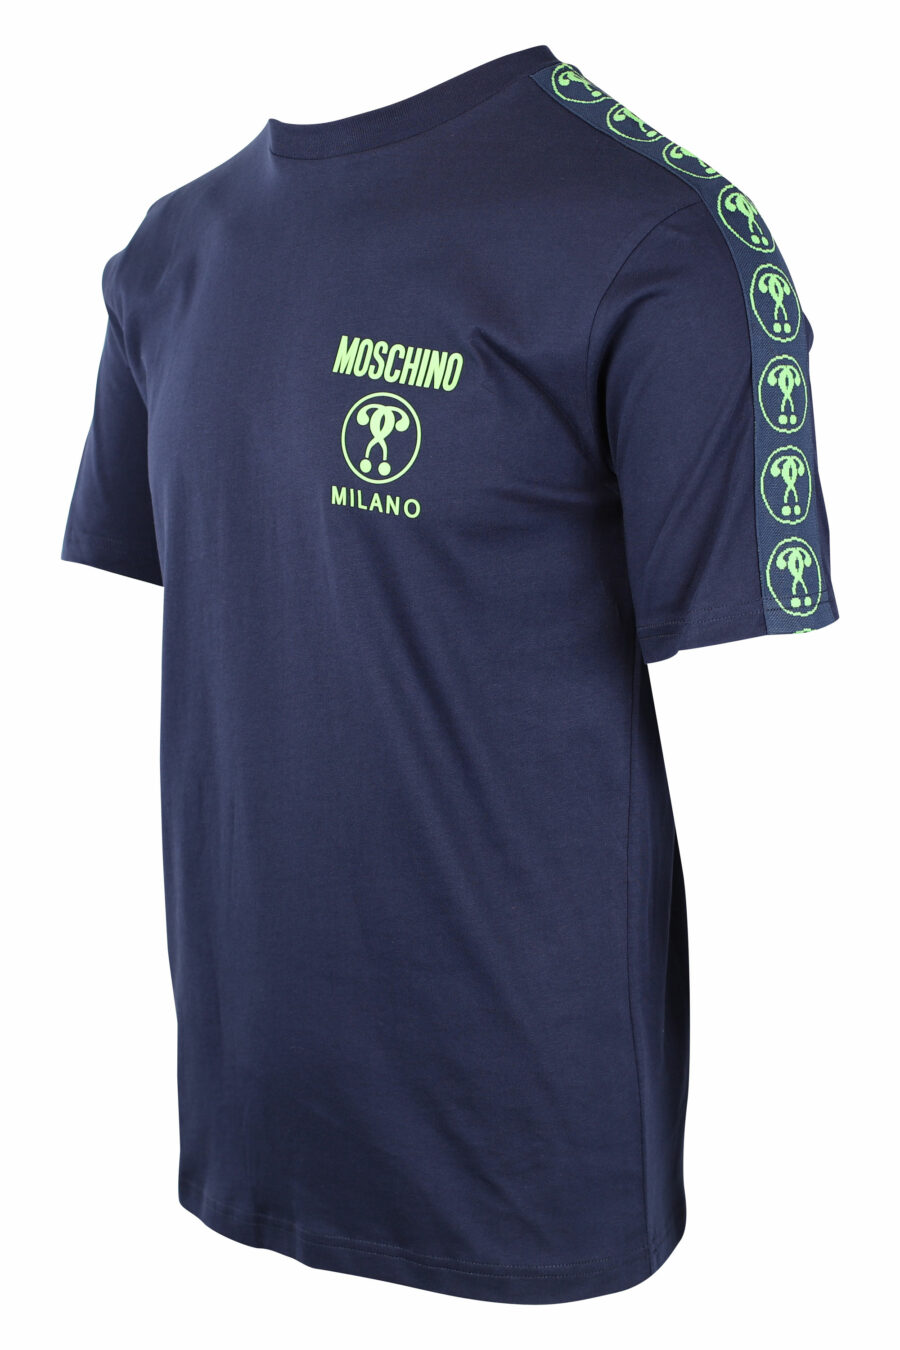 Camiseta azul oscura con minilogo doble pregunta en verde - IMG 1447